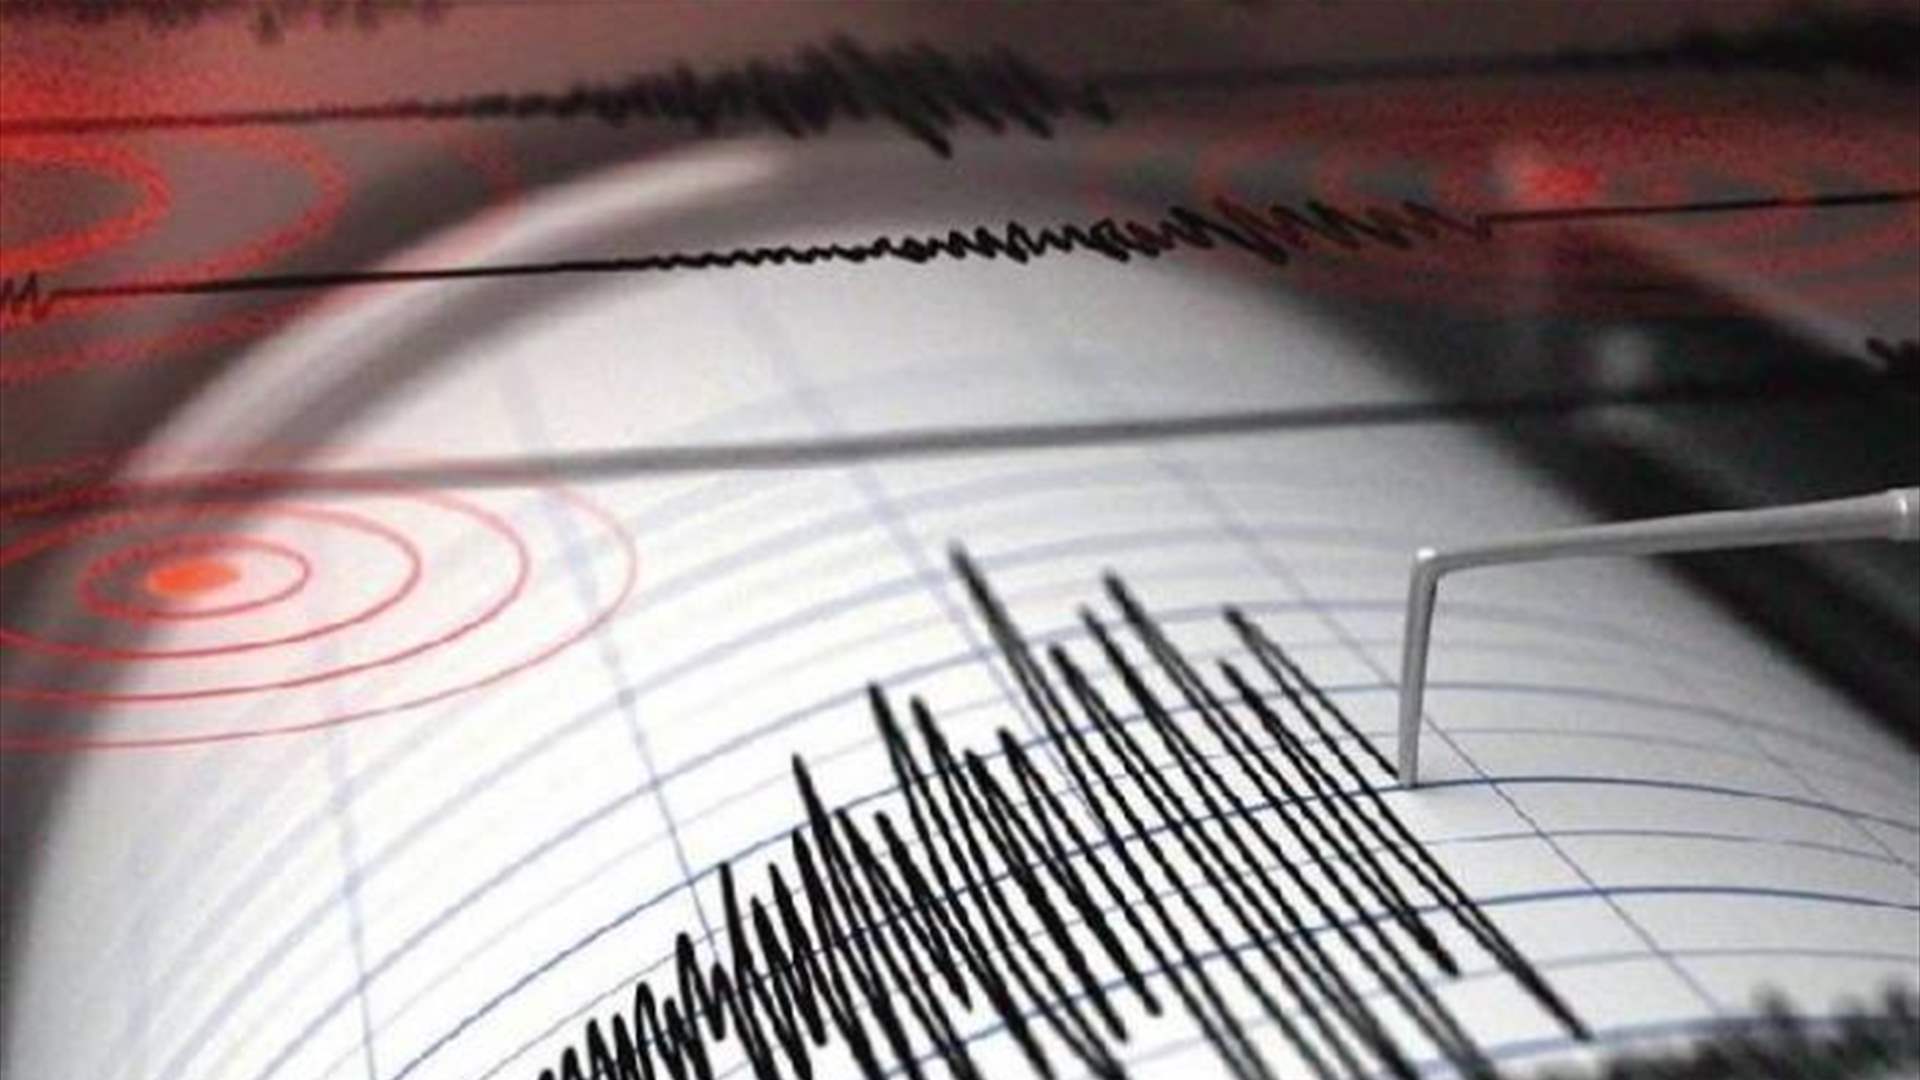 Earthquake of magnitude 5.7 strikes near Peru coast